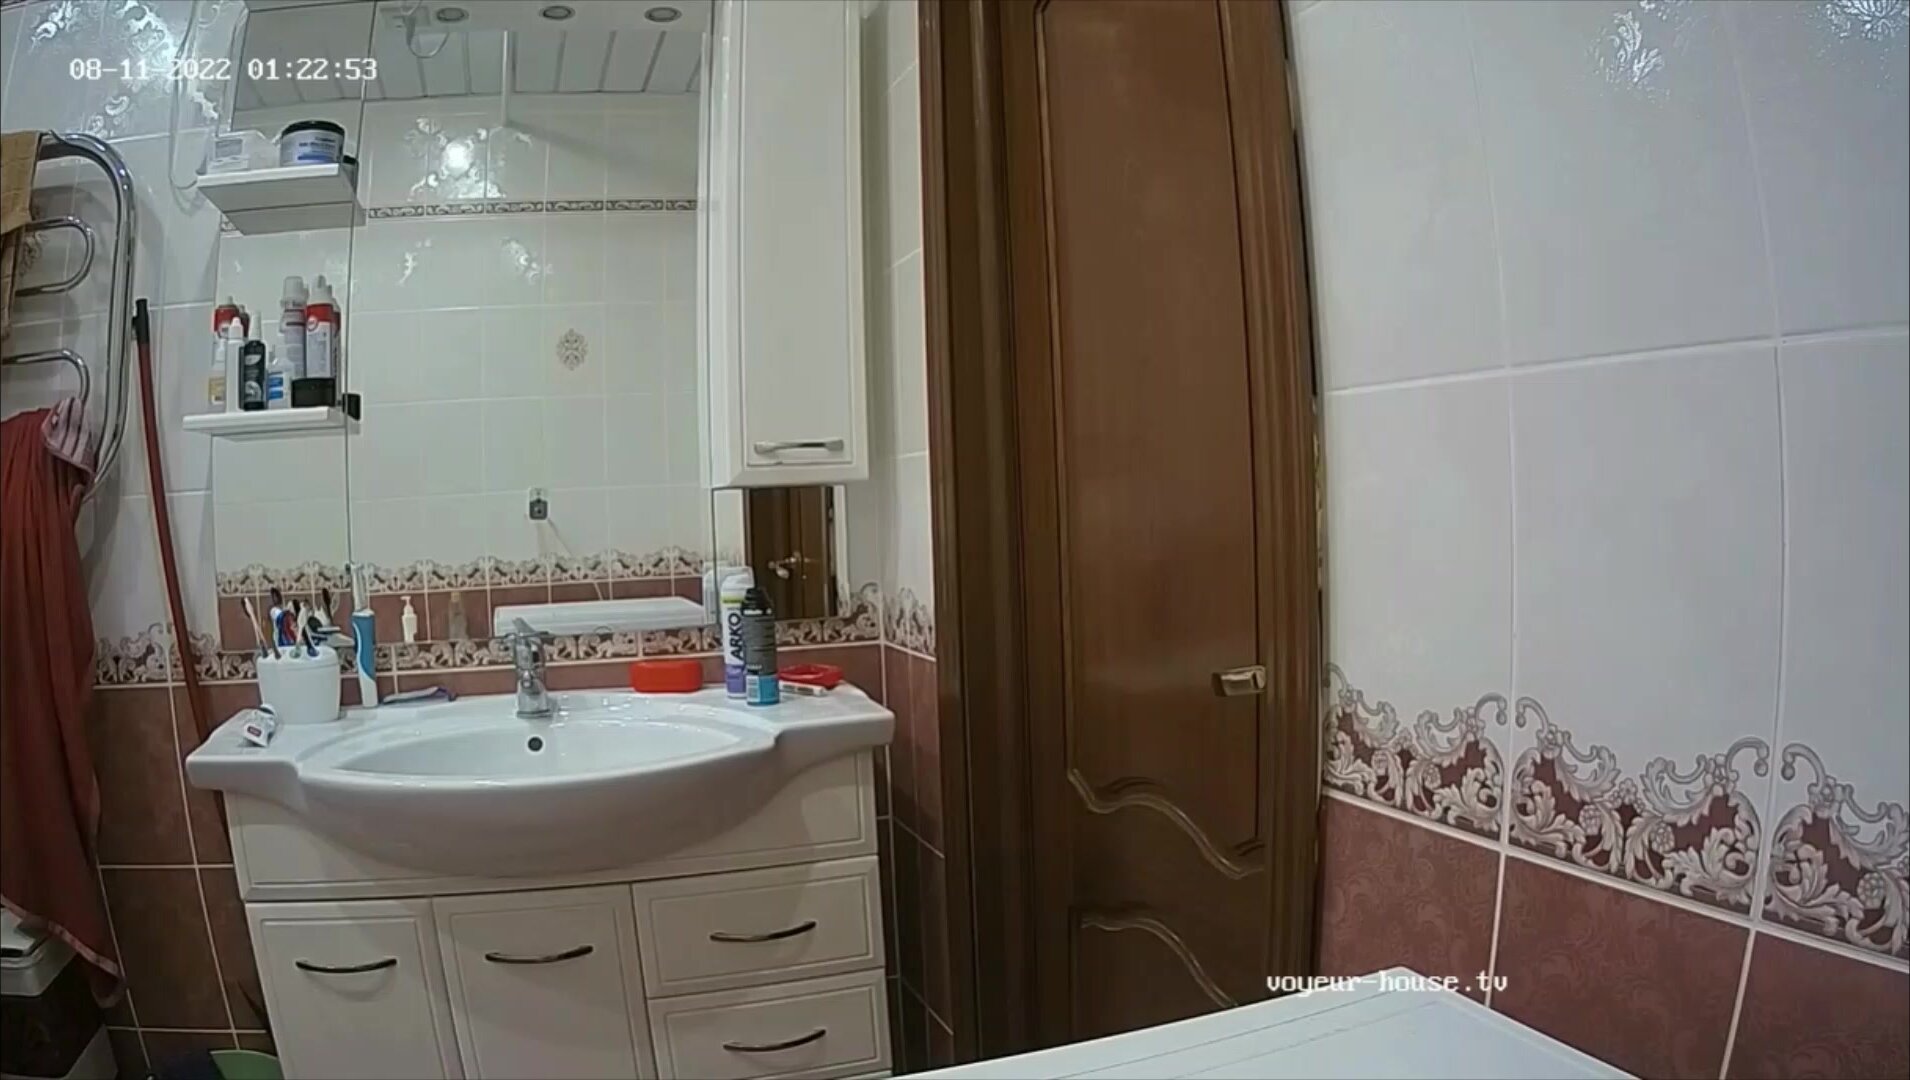 Woman  in Toilet 380